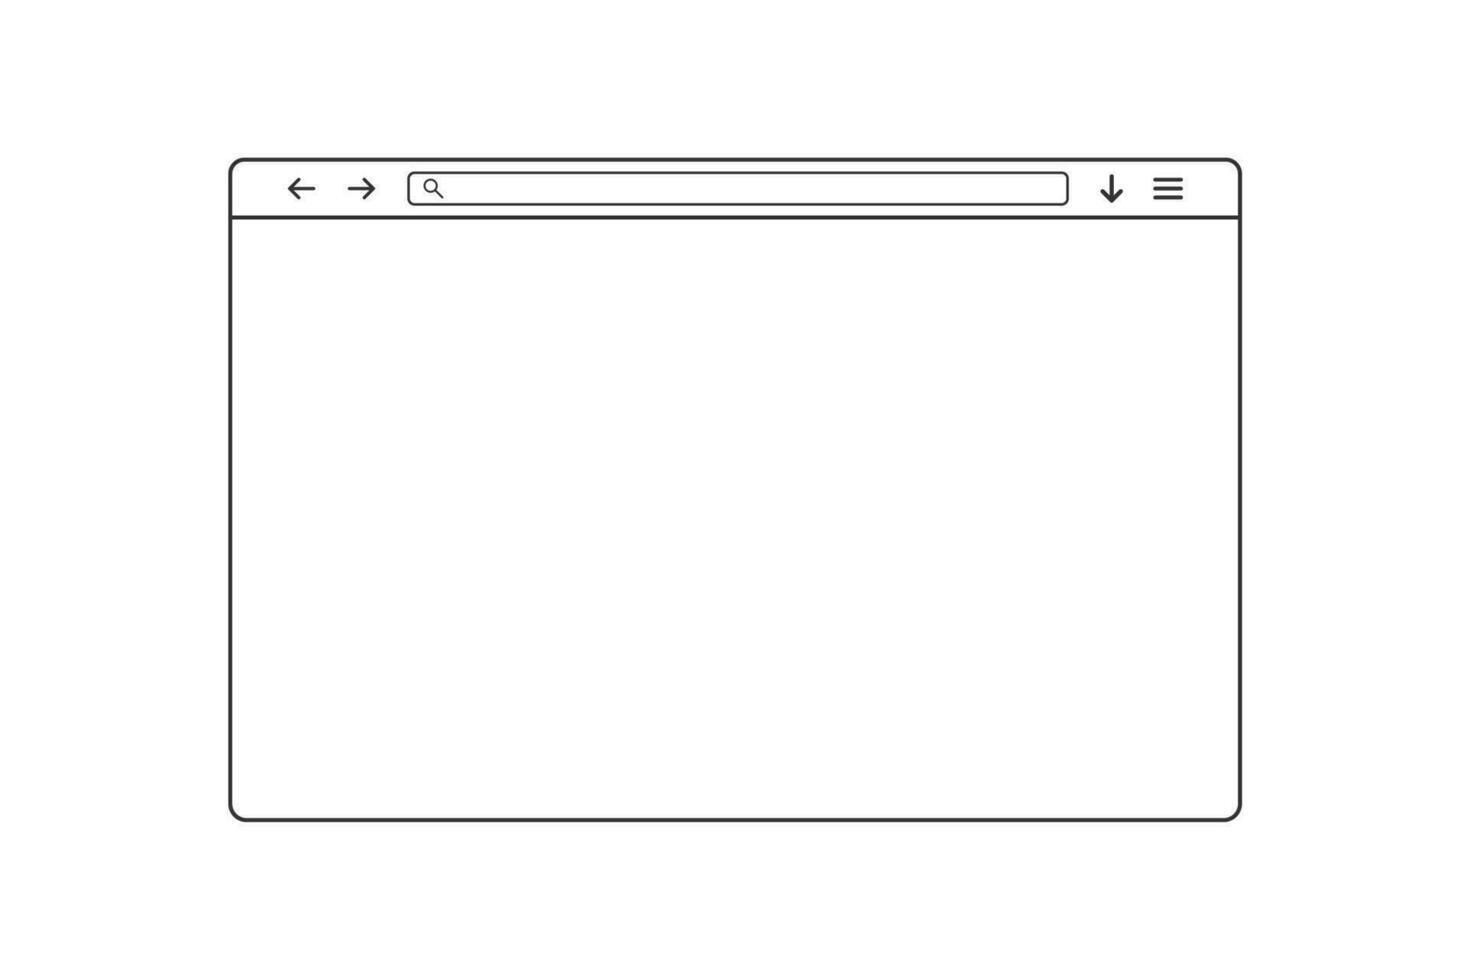 web navegador ventana. sencillo contorno web página. navegador modelo con buscar bar y lupa icono. aislado sitio web ventana en blanco antecedentes. transparente web navegador marco con DIRECCIÓN. eps 10 vector